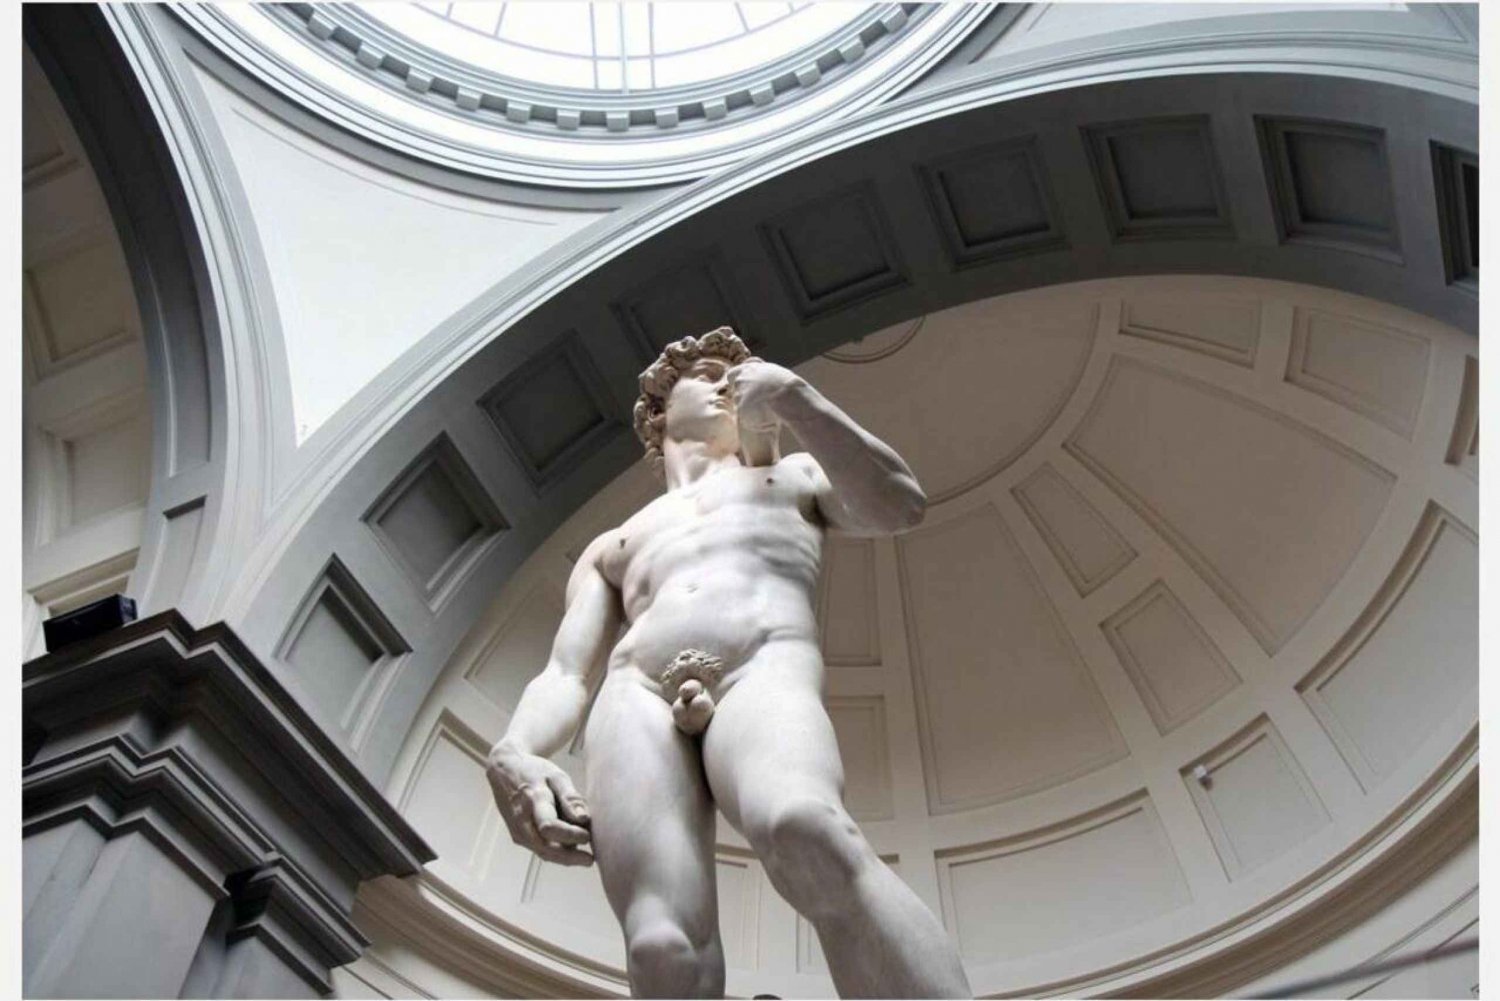 Florenz: Führung durch die Accademia Galerie mit einem Kunstexperten